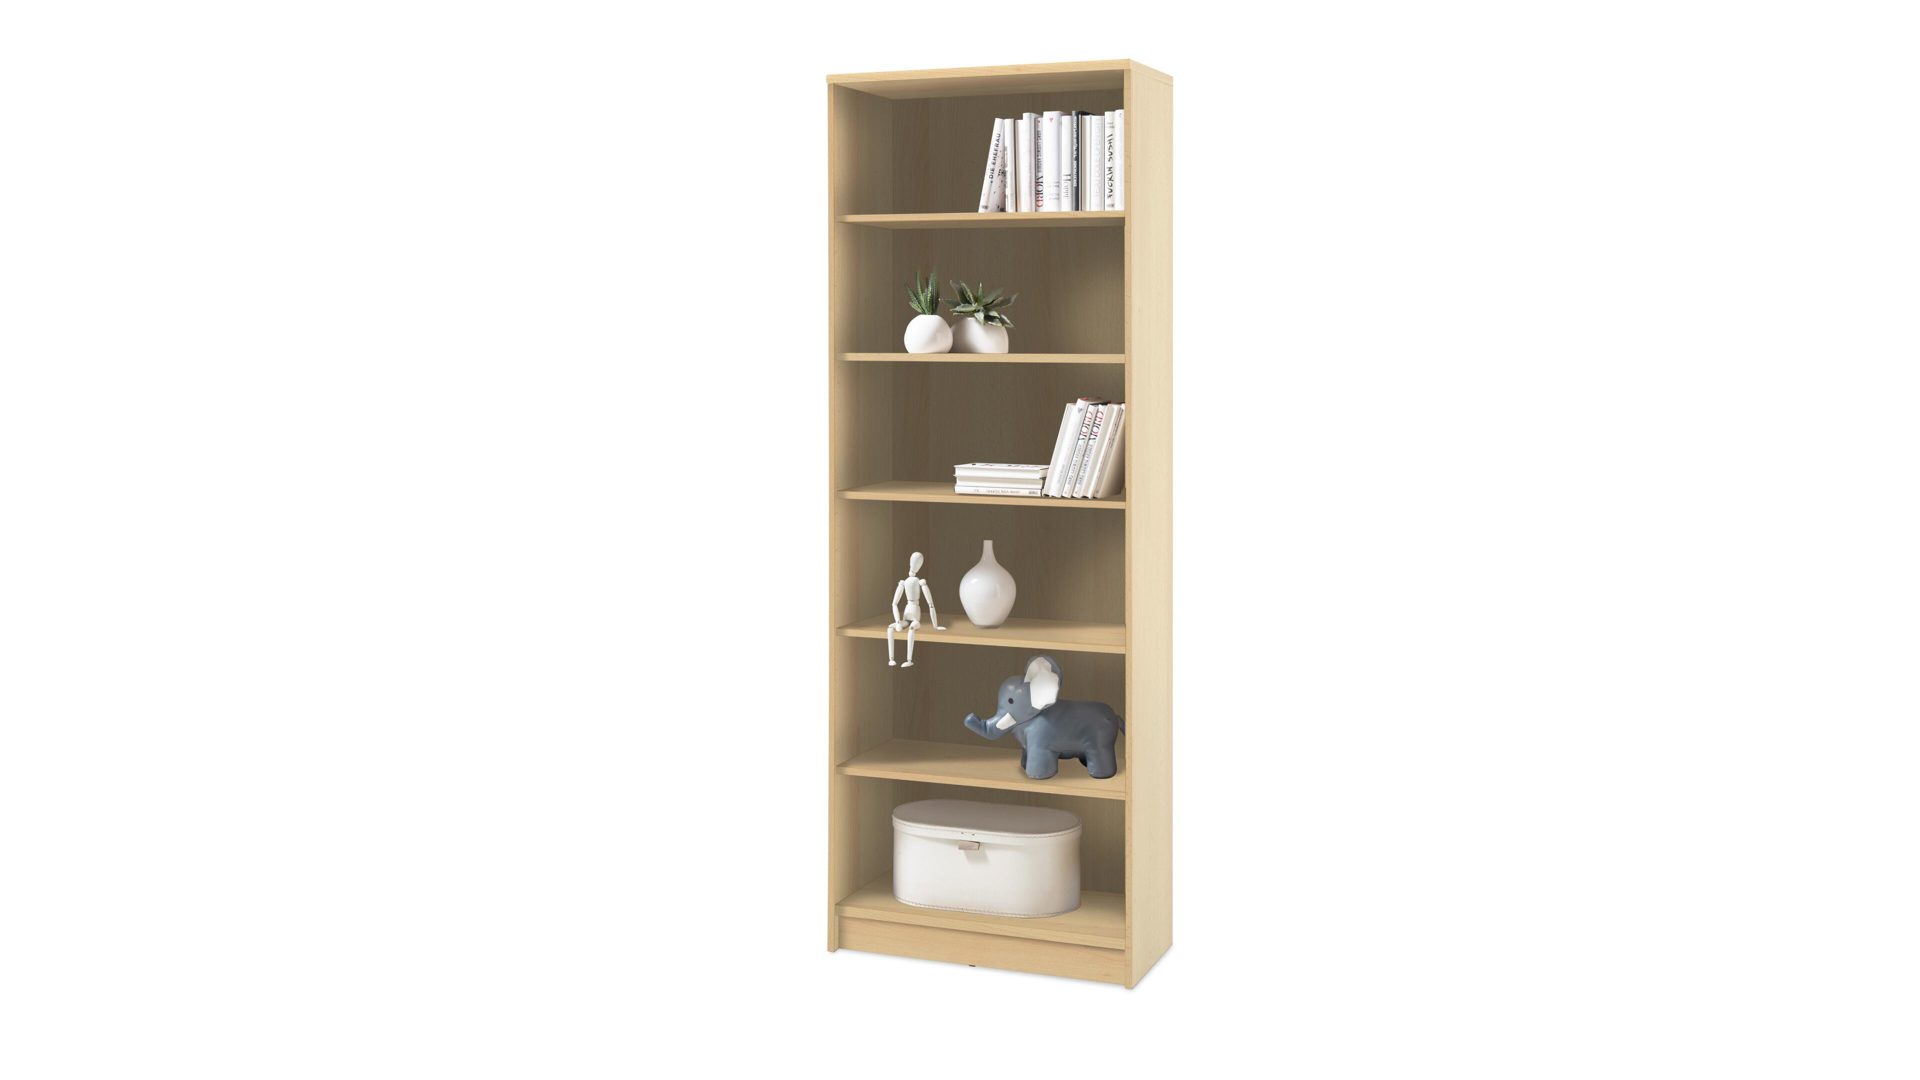 Regal Bega consult aus Holz in Holzfarben Bücherregal als Wohnzimmermöbel buchefarbene Kunststoffoberflächen – Höhe ca. 198 cm, fünf Böden